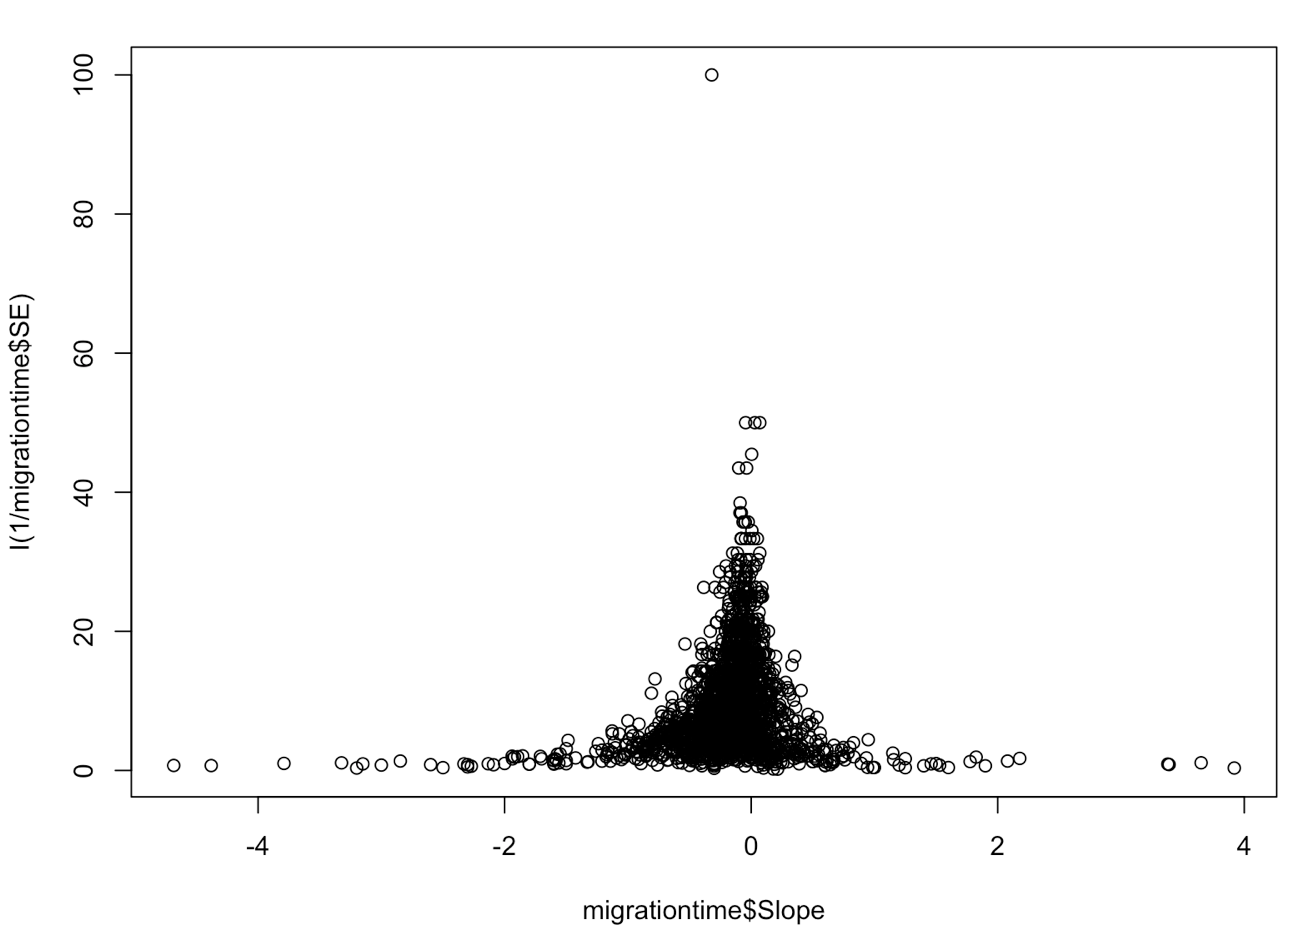 Funnel plot of model slope density distribution